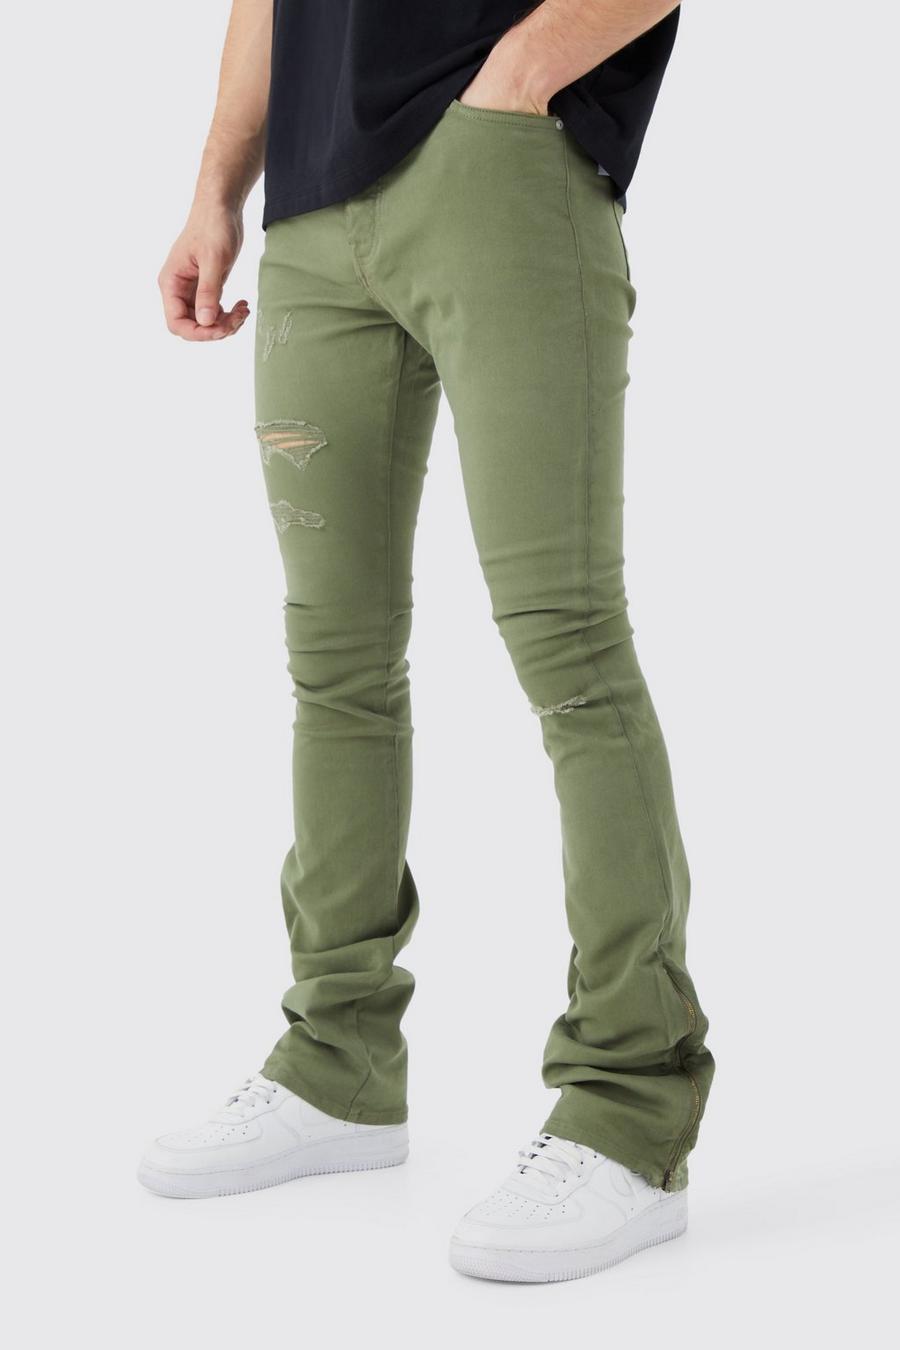 Pantaloni Tall con strappi & rattoppi in vita fissa, zip e inserti, Olive image number 1